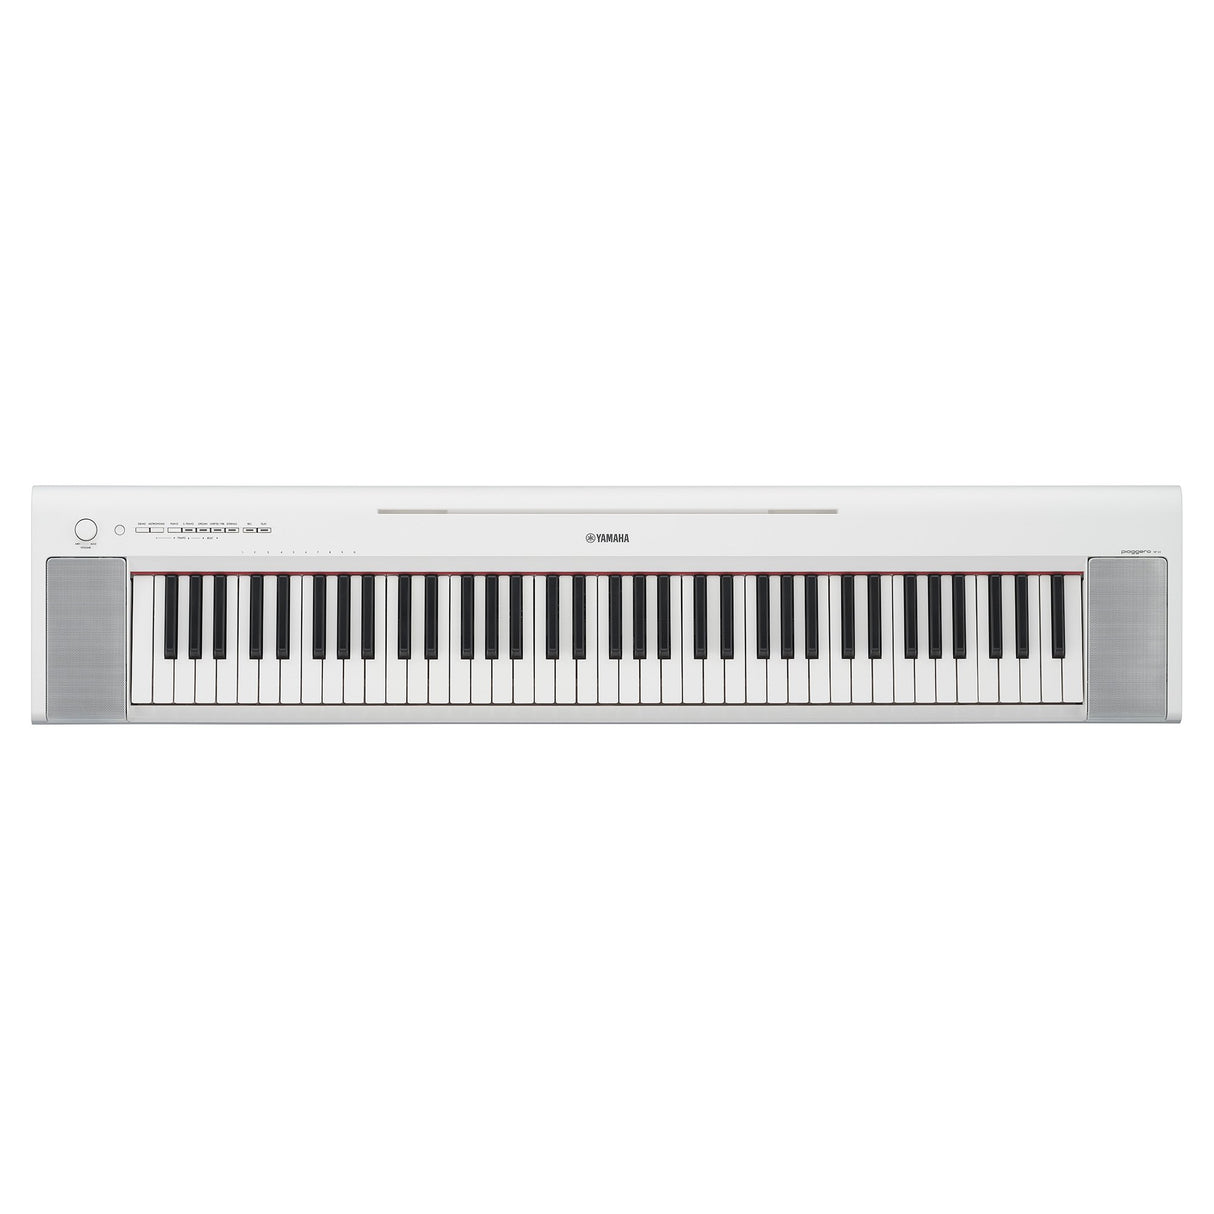 Yamaha NP-35 Piaggero Portable Piano - Musik-Ebert Gmbh